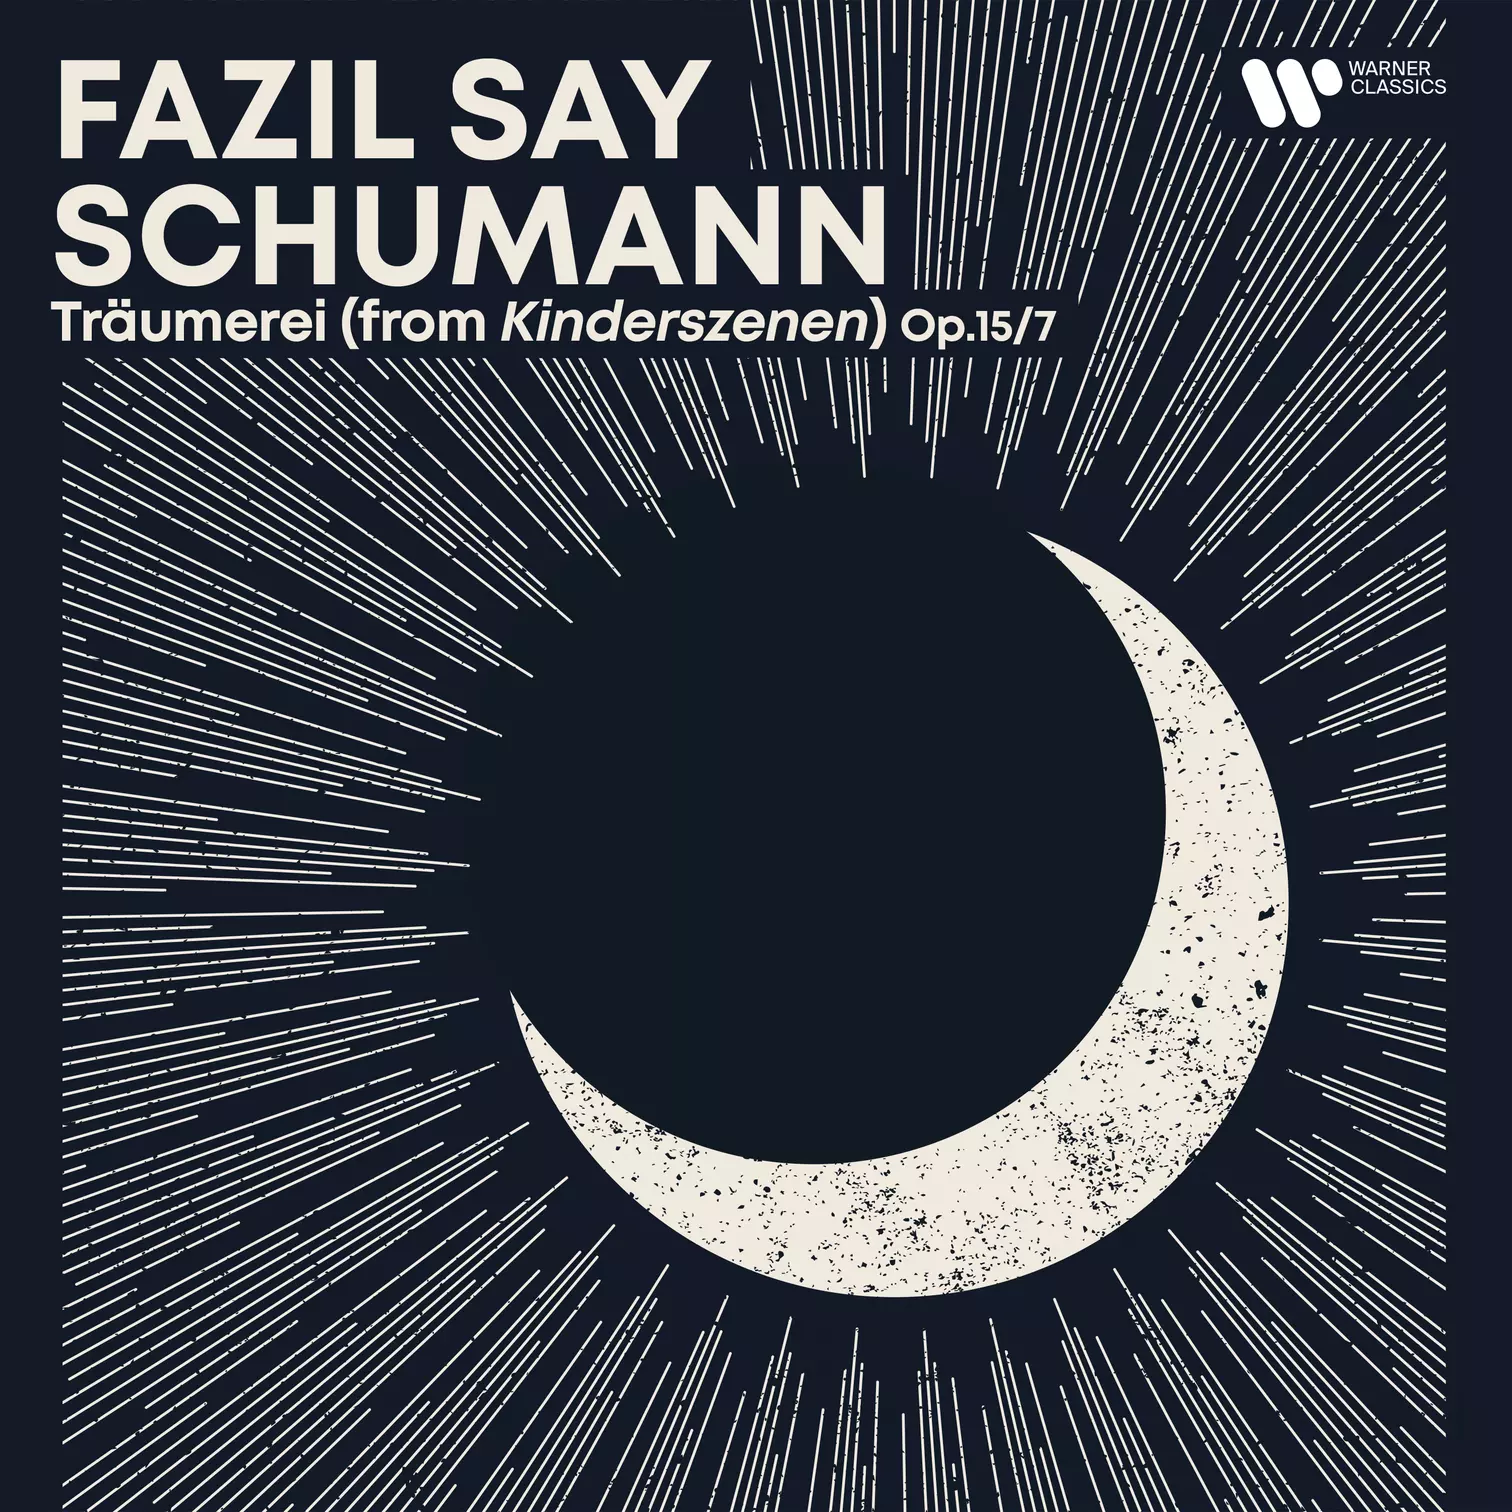 Fazil Say Schumann, Träumerei (from Kinderszenen) Op.15/7